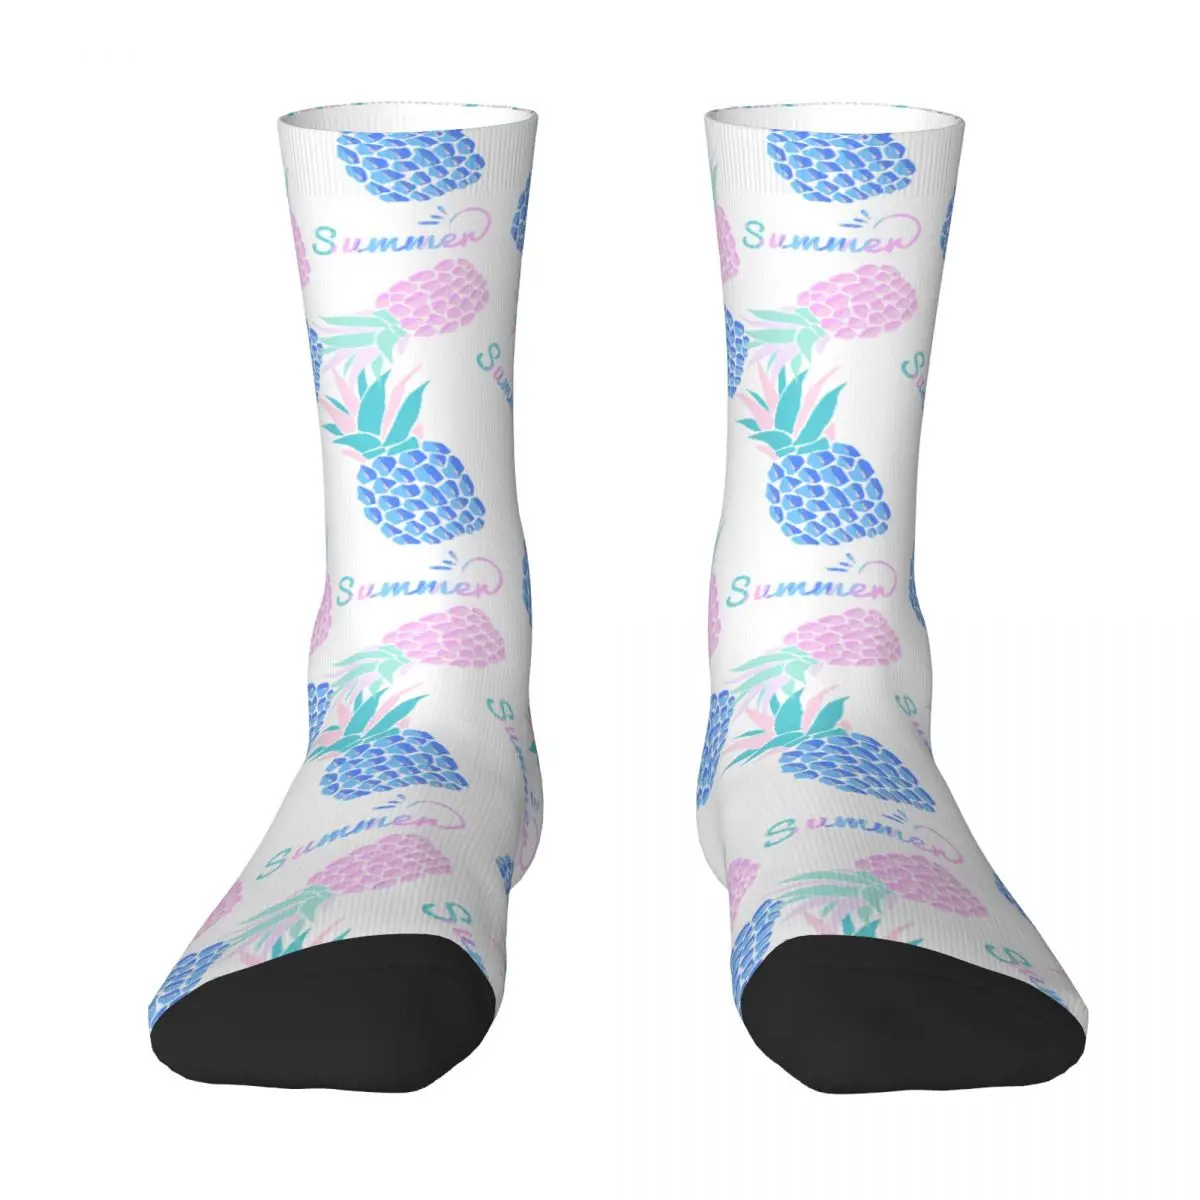 Dream Of Pineapple Adult Socks Pineapple, simplicity, geometry, fantasy, macarons Unisex socks,men Socks women Socks